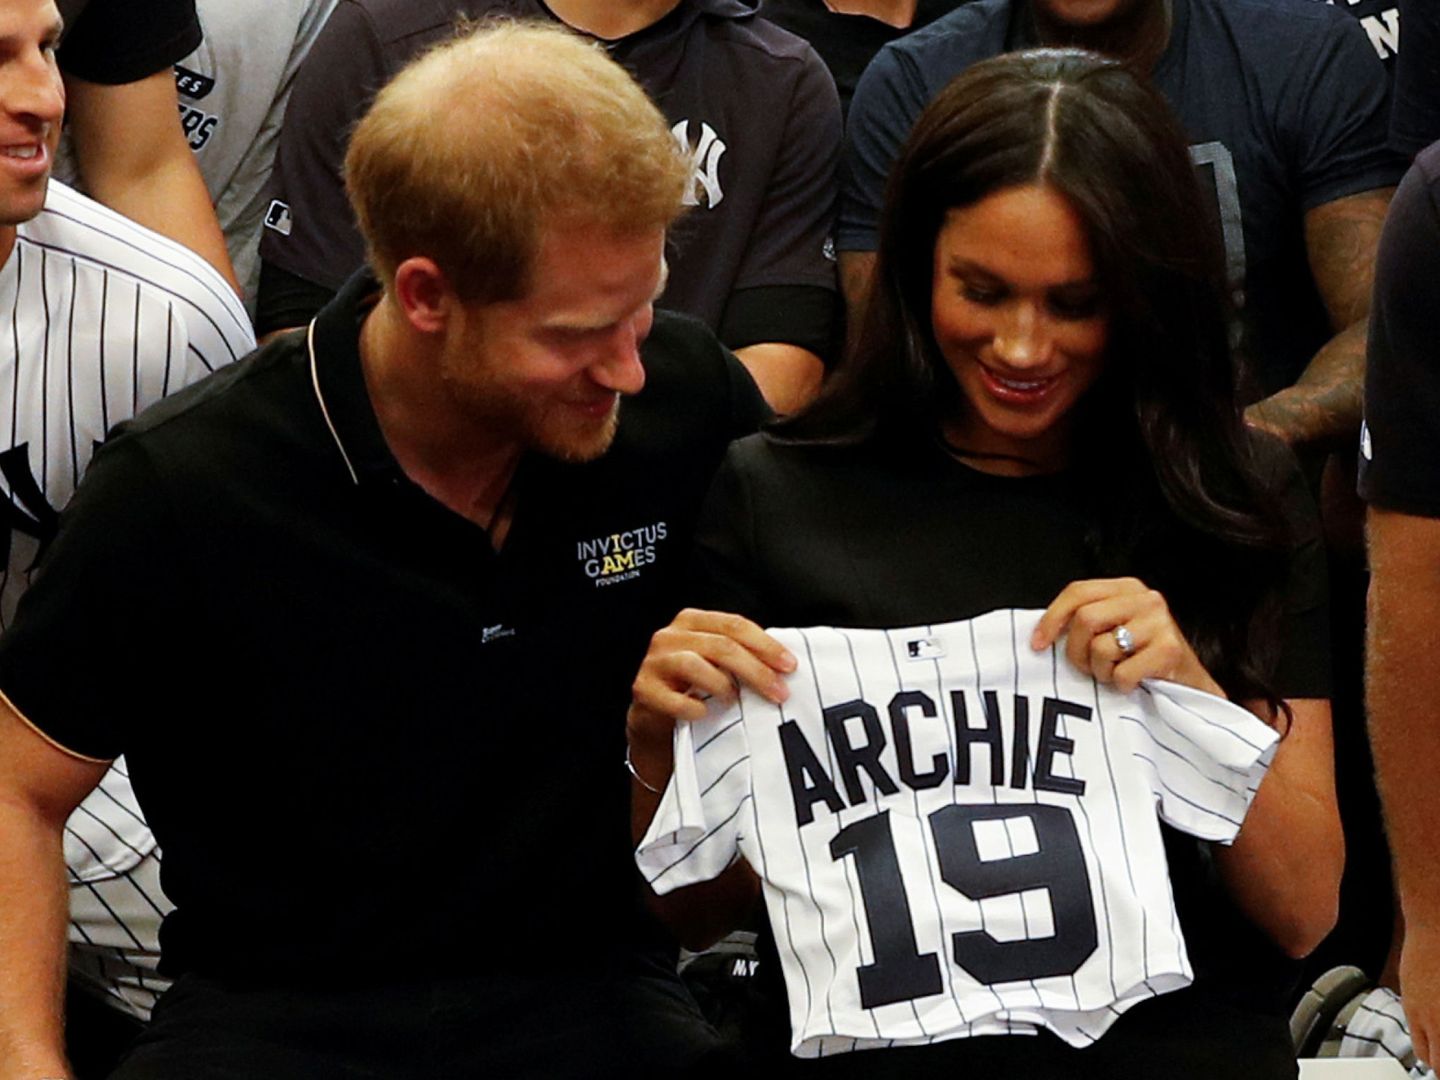 Los duques de Sussex, con una camiseta con el nombre de Archie, que tiene mucho en común con el que han elegido para su fundación. (Reuters)